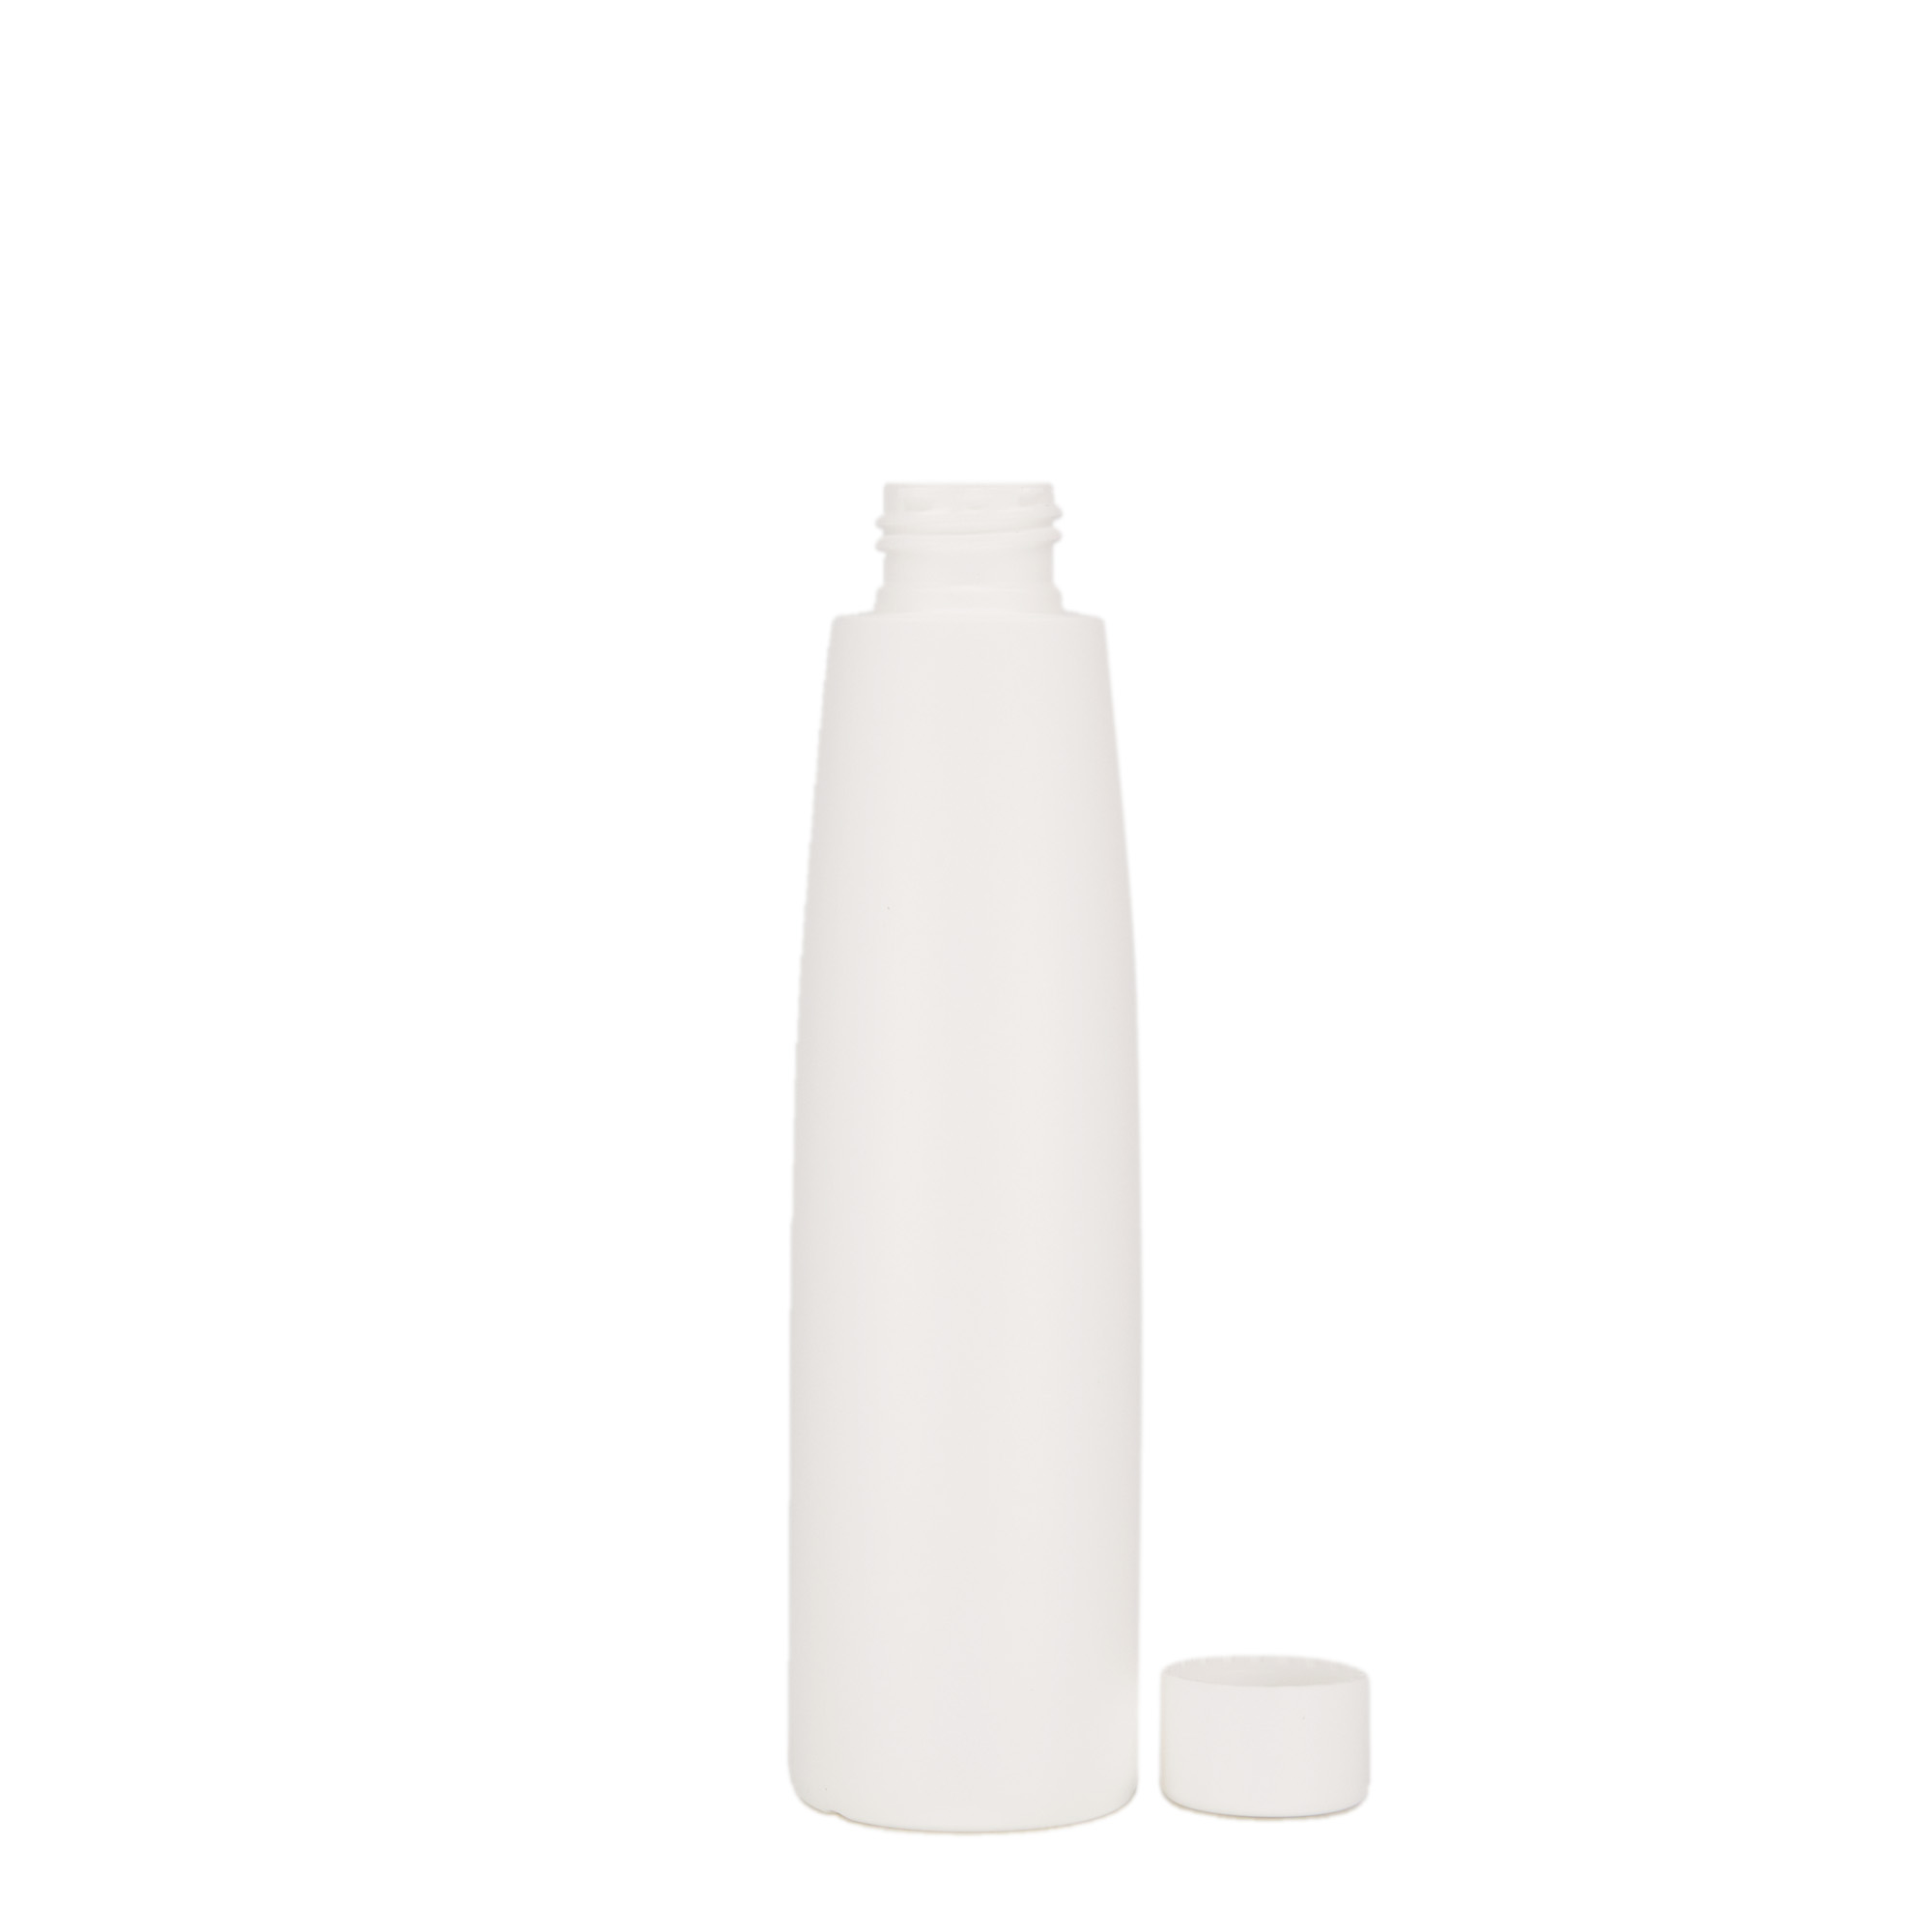 200 ml plastic bottle 'Donald', HDPE, white, closure: GPI 24/410